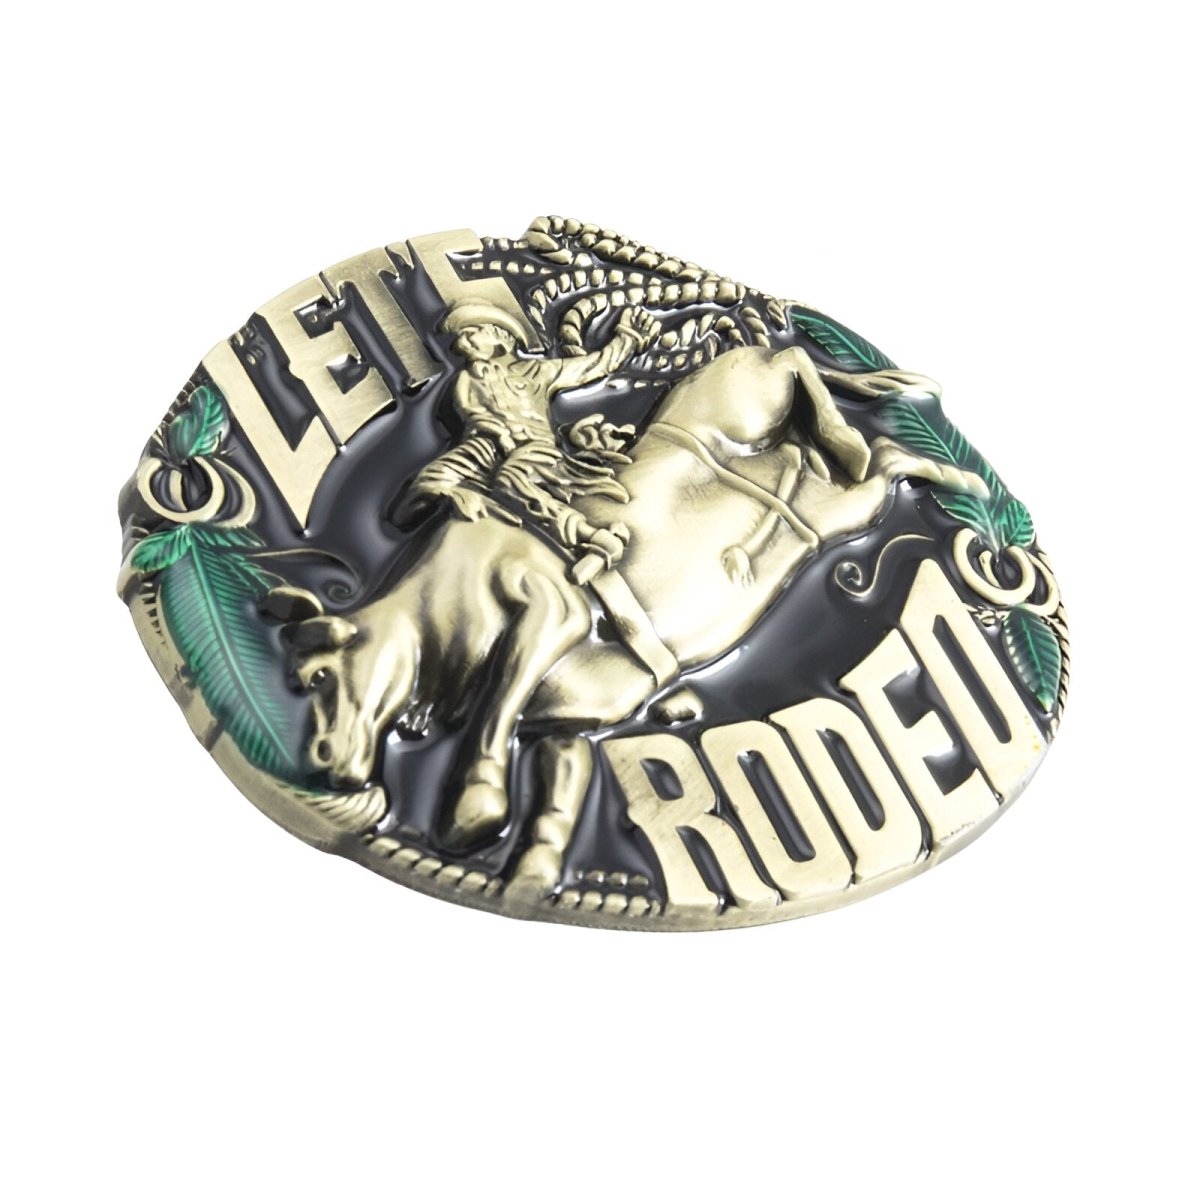 Boucle de ceinture Western, "LET'S RODEO", modèle Troy - La Boutique de la Ceinture